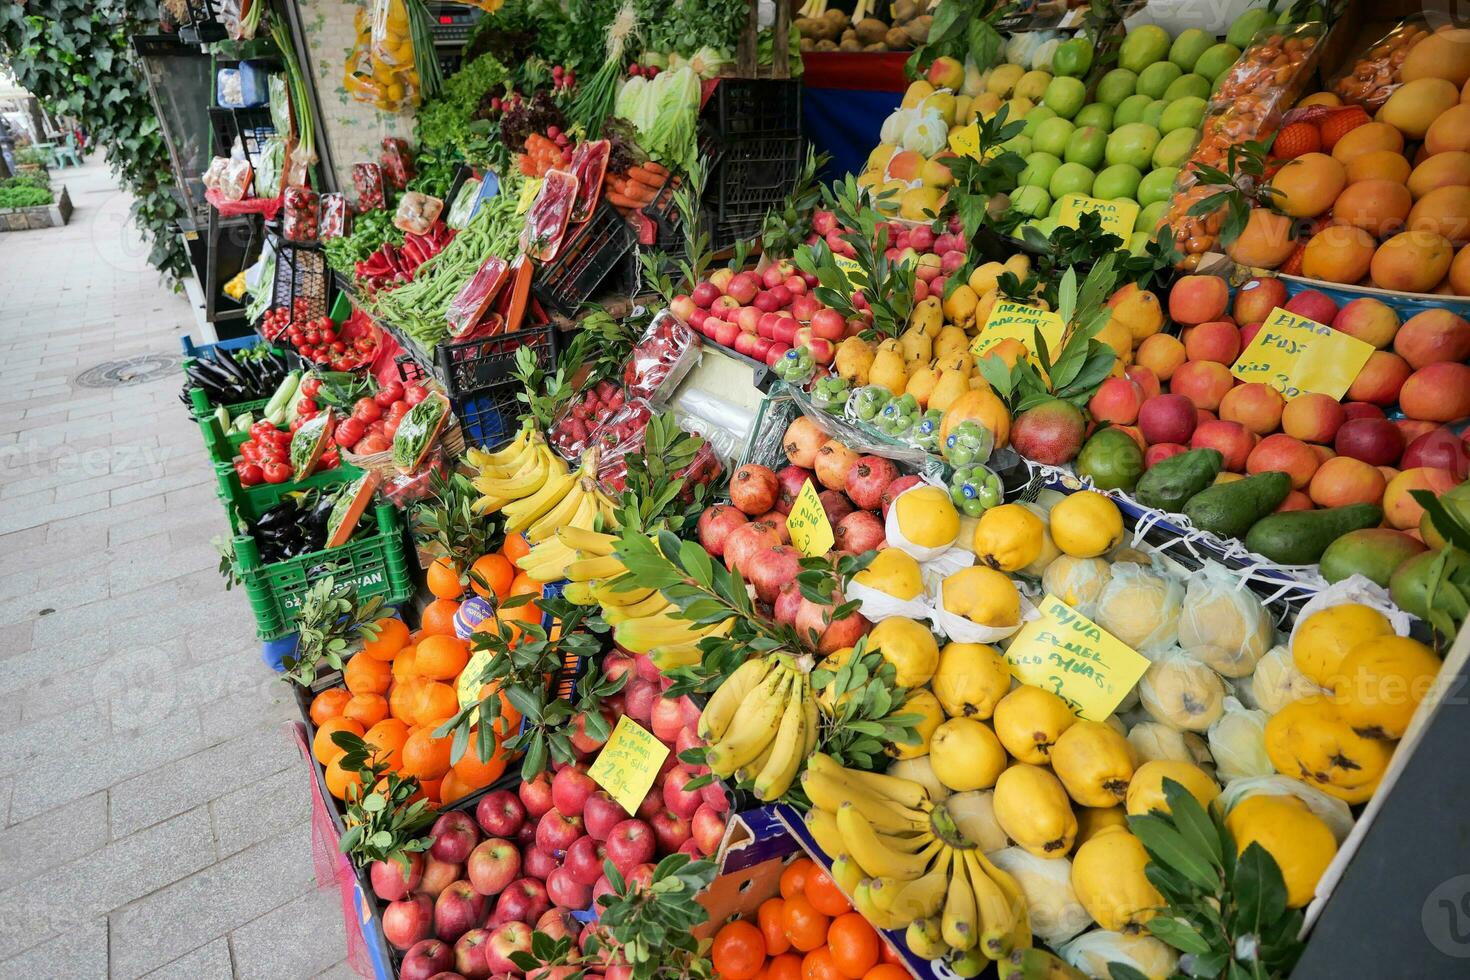 fruit stalle à local marché dans Istanbul photo